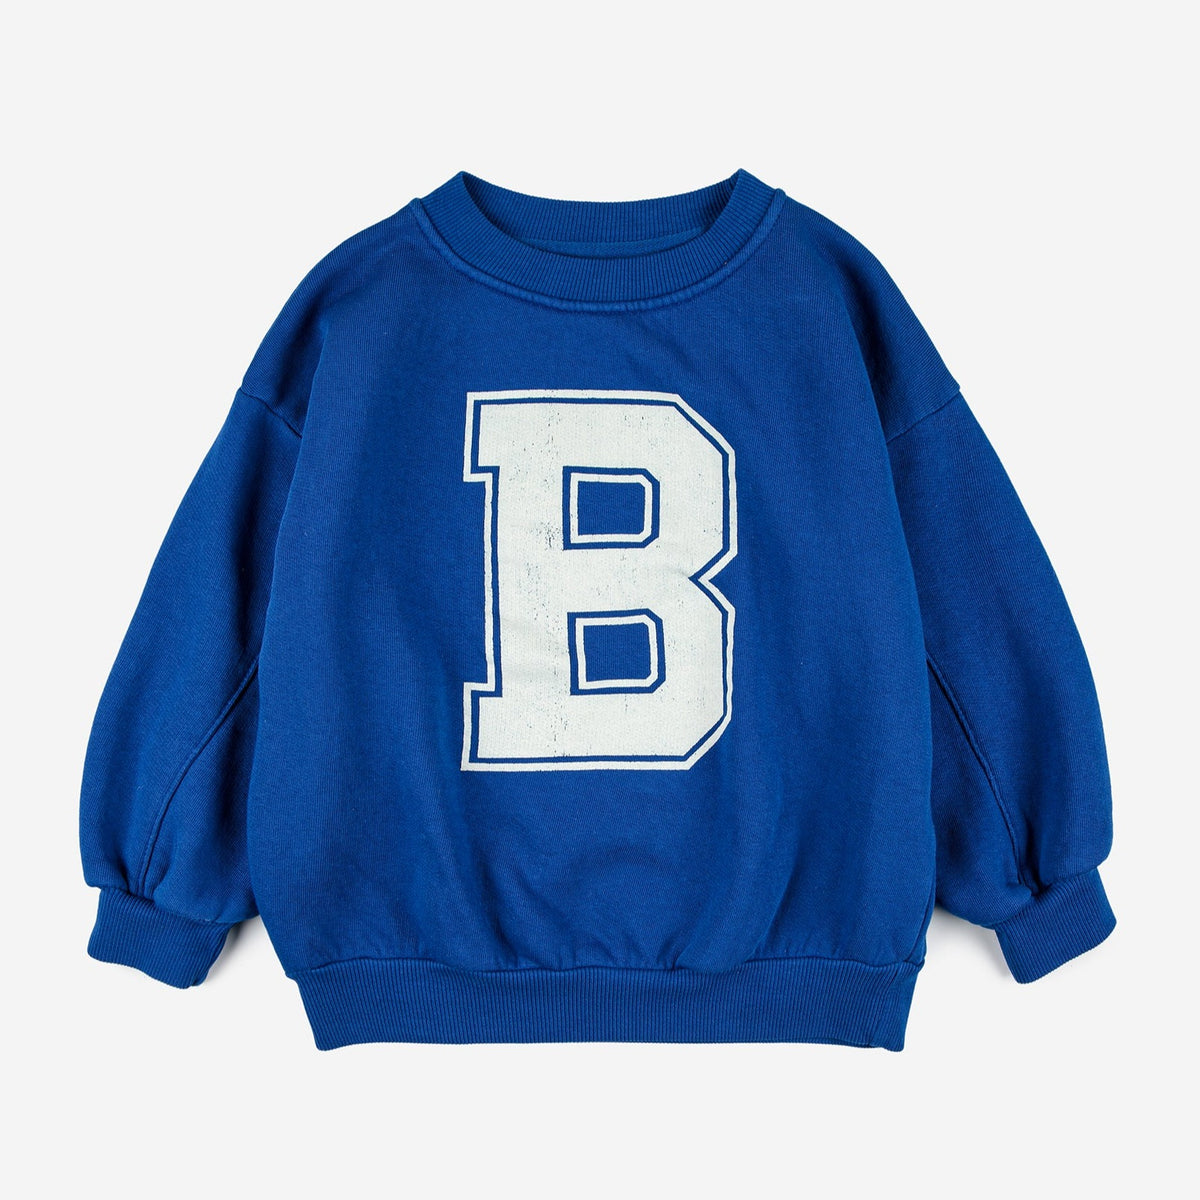 Big B sweatshirt